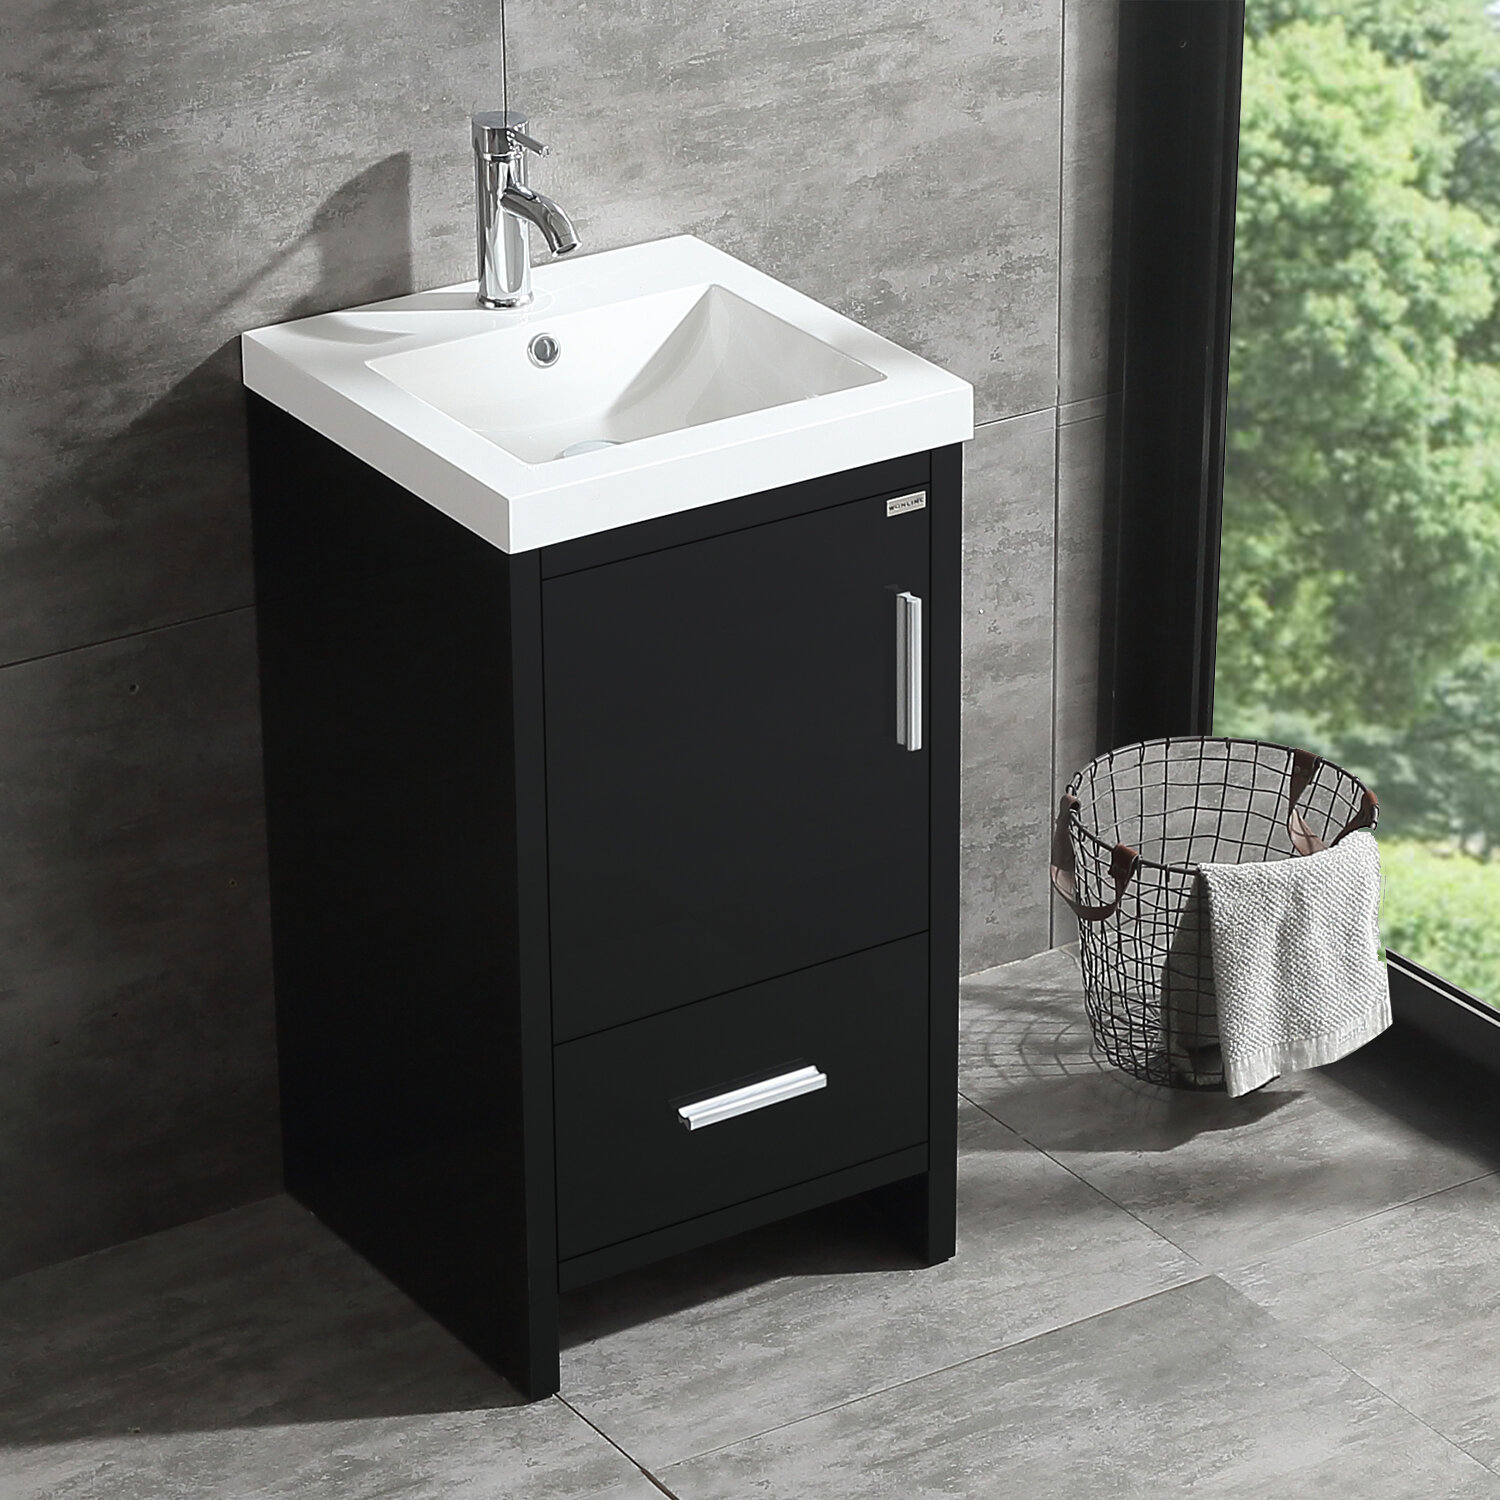 Wonline 18 Black Single Wood Bathroom Vanity Cabinet Reviews Wayfair